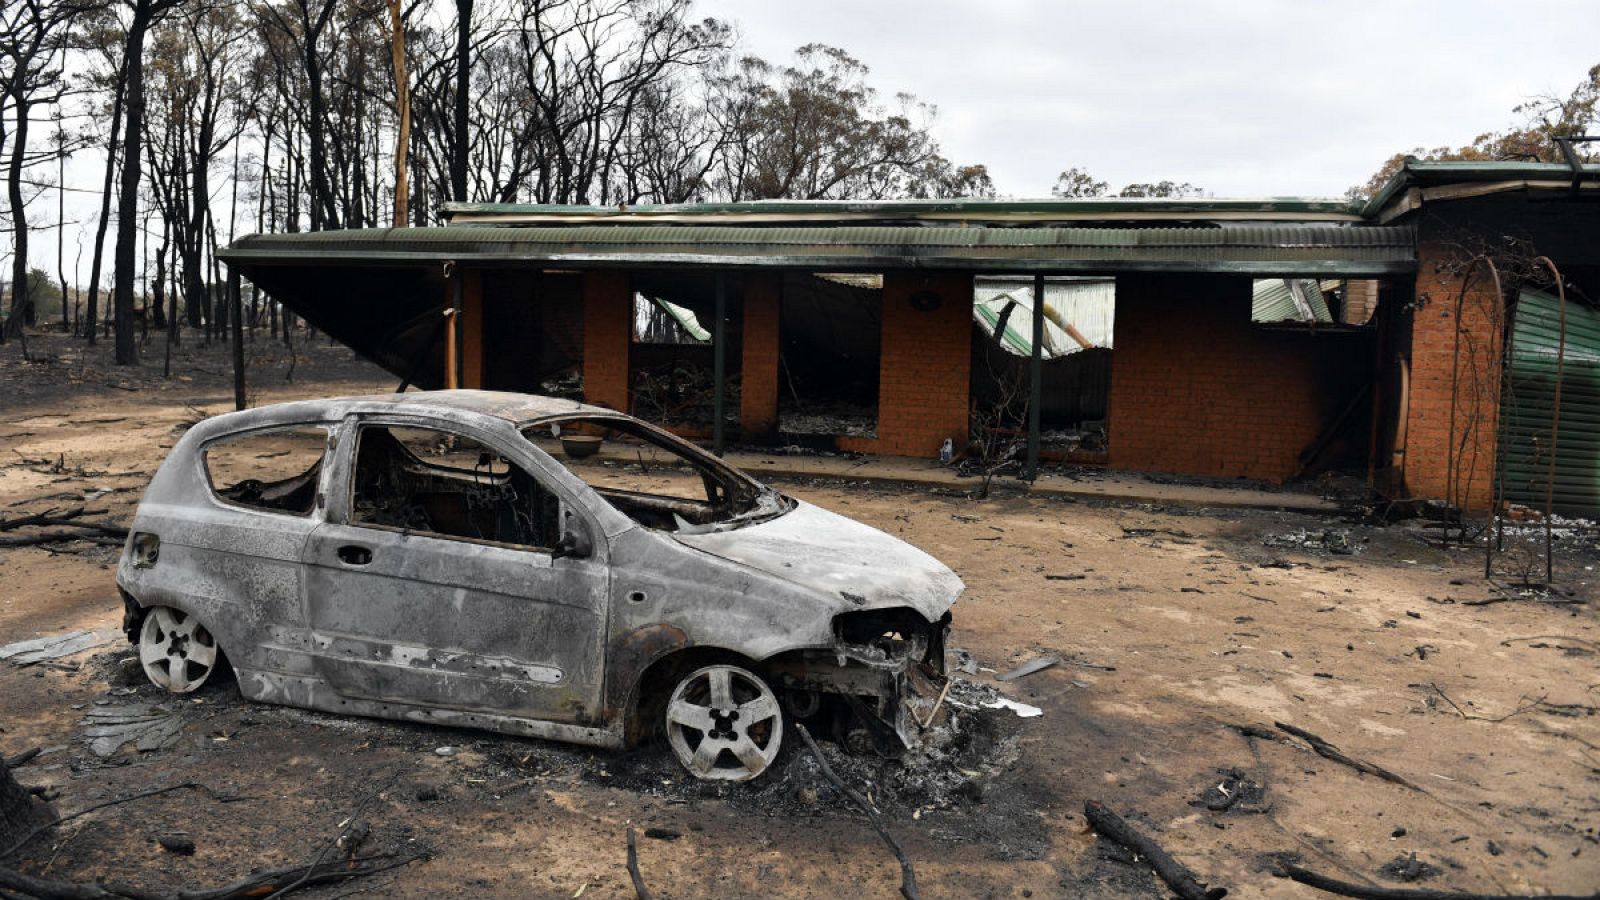 Imagen de una casa y un coche calcinados tras los incendios forestales catastróficos en la aldea de Balmoral, Nueva Gales del Sur, Australia del Sur de las Tierras Altas.